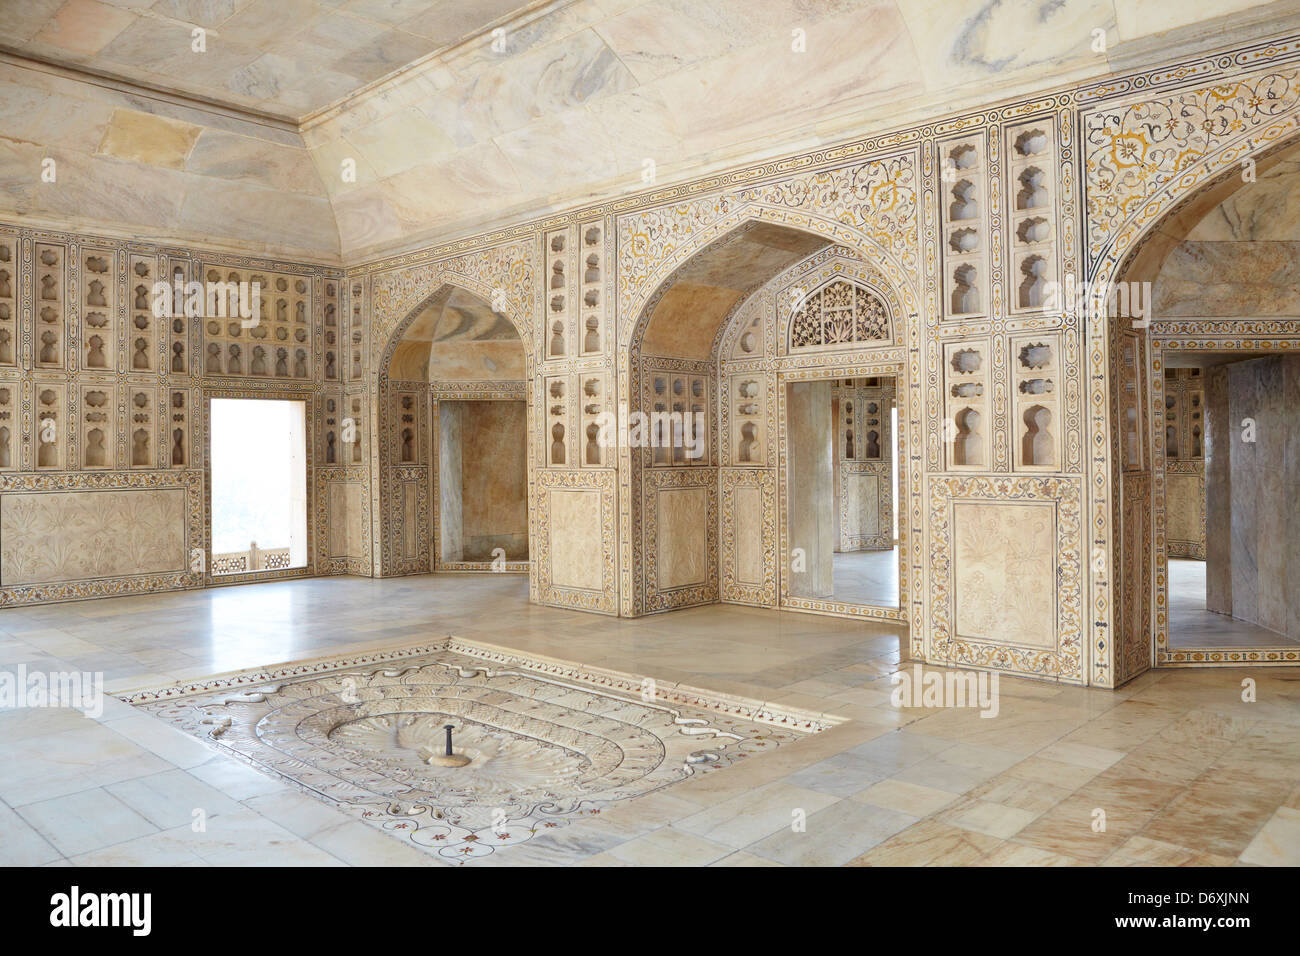 Agra, le Fort Rouge - l'intérieur de l'Khas Mahal pavillon central avec fontaine intérieure et reliefs en pierre, Agra, Inde Banque D'Images